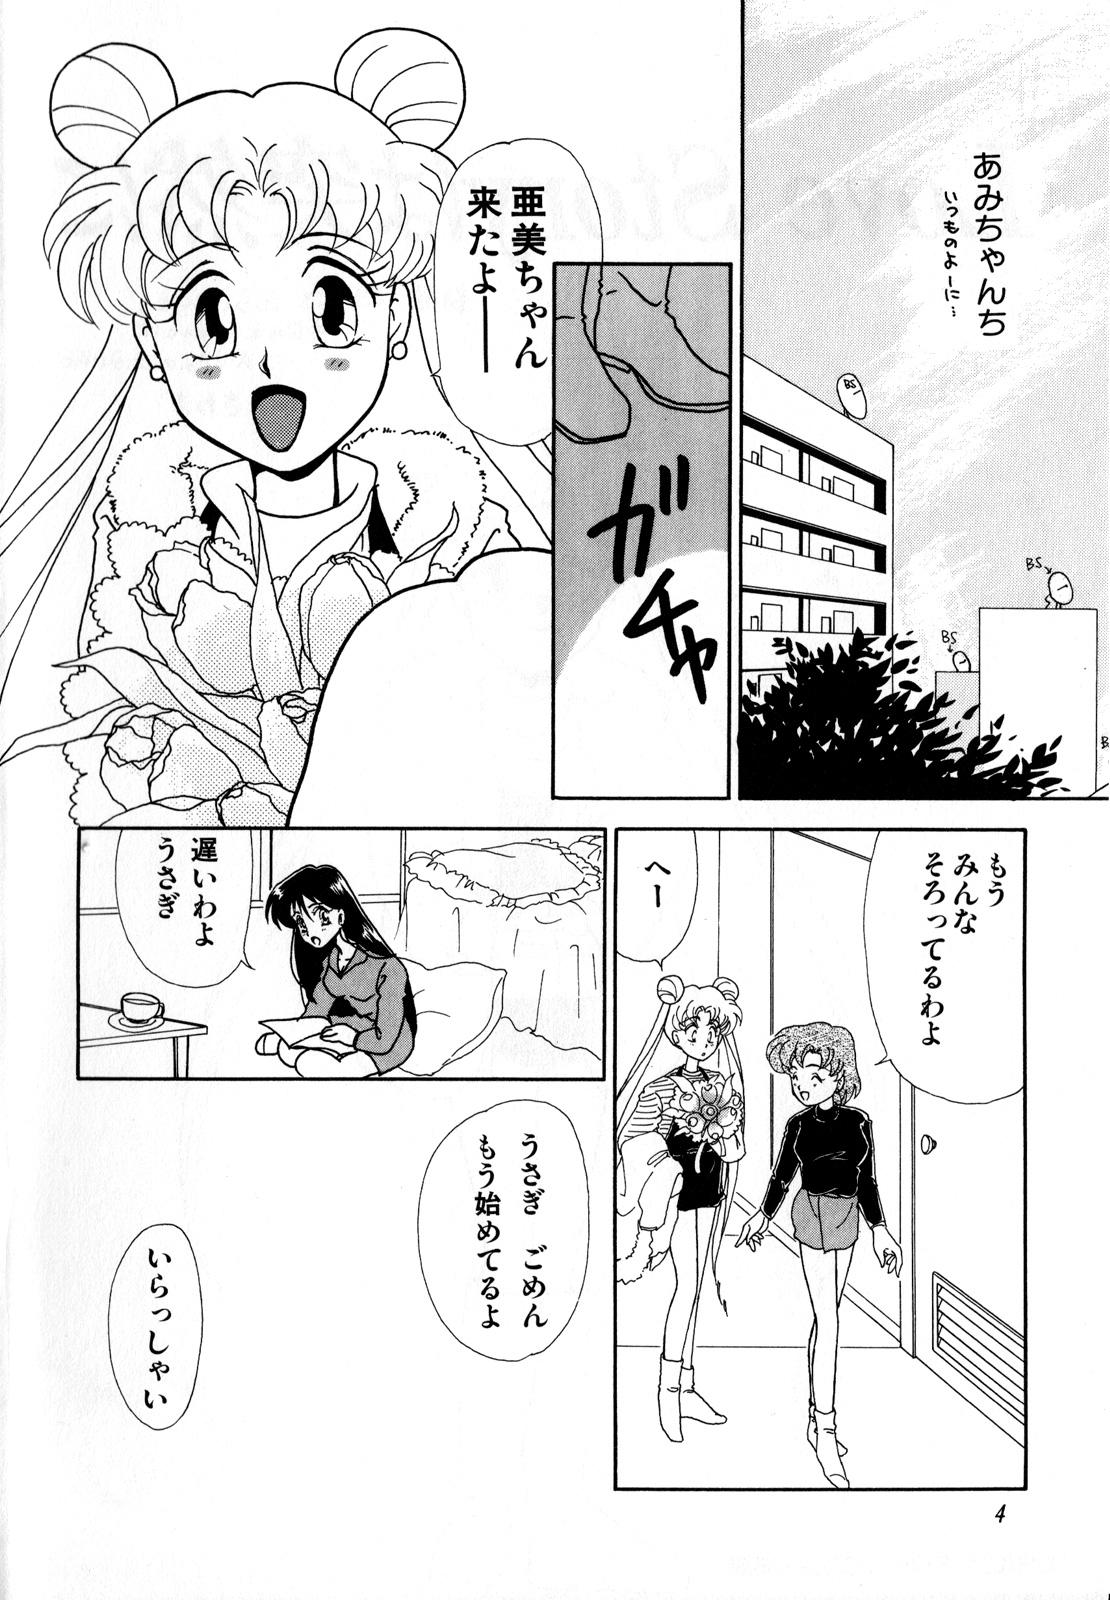 Jap Lunatic Party 3 - Sailor moon Master - Page 5